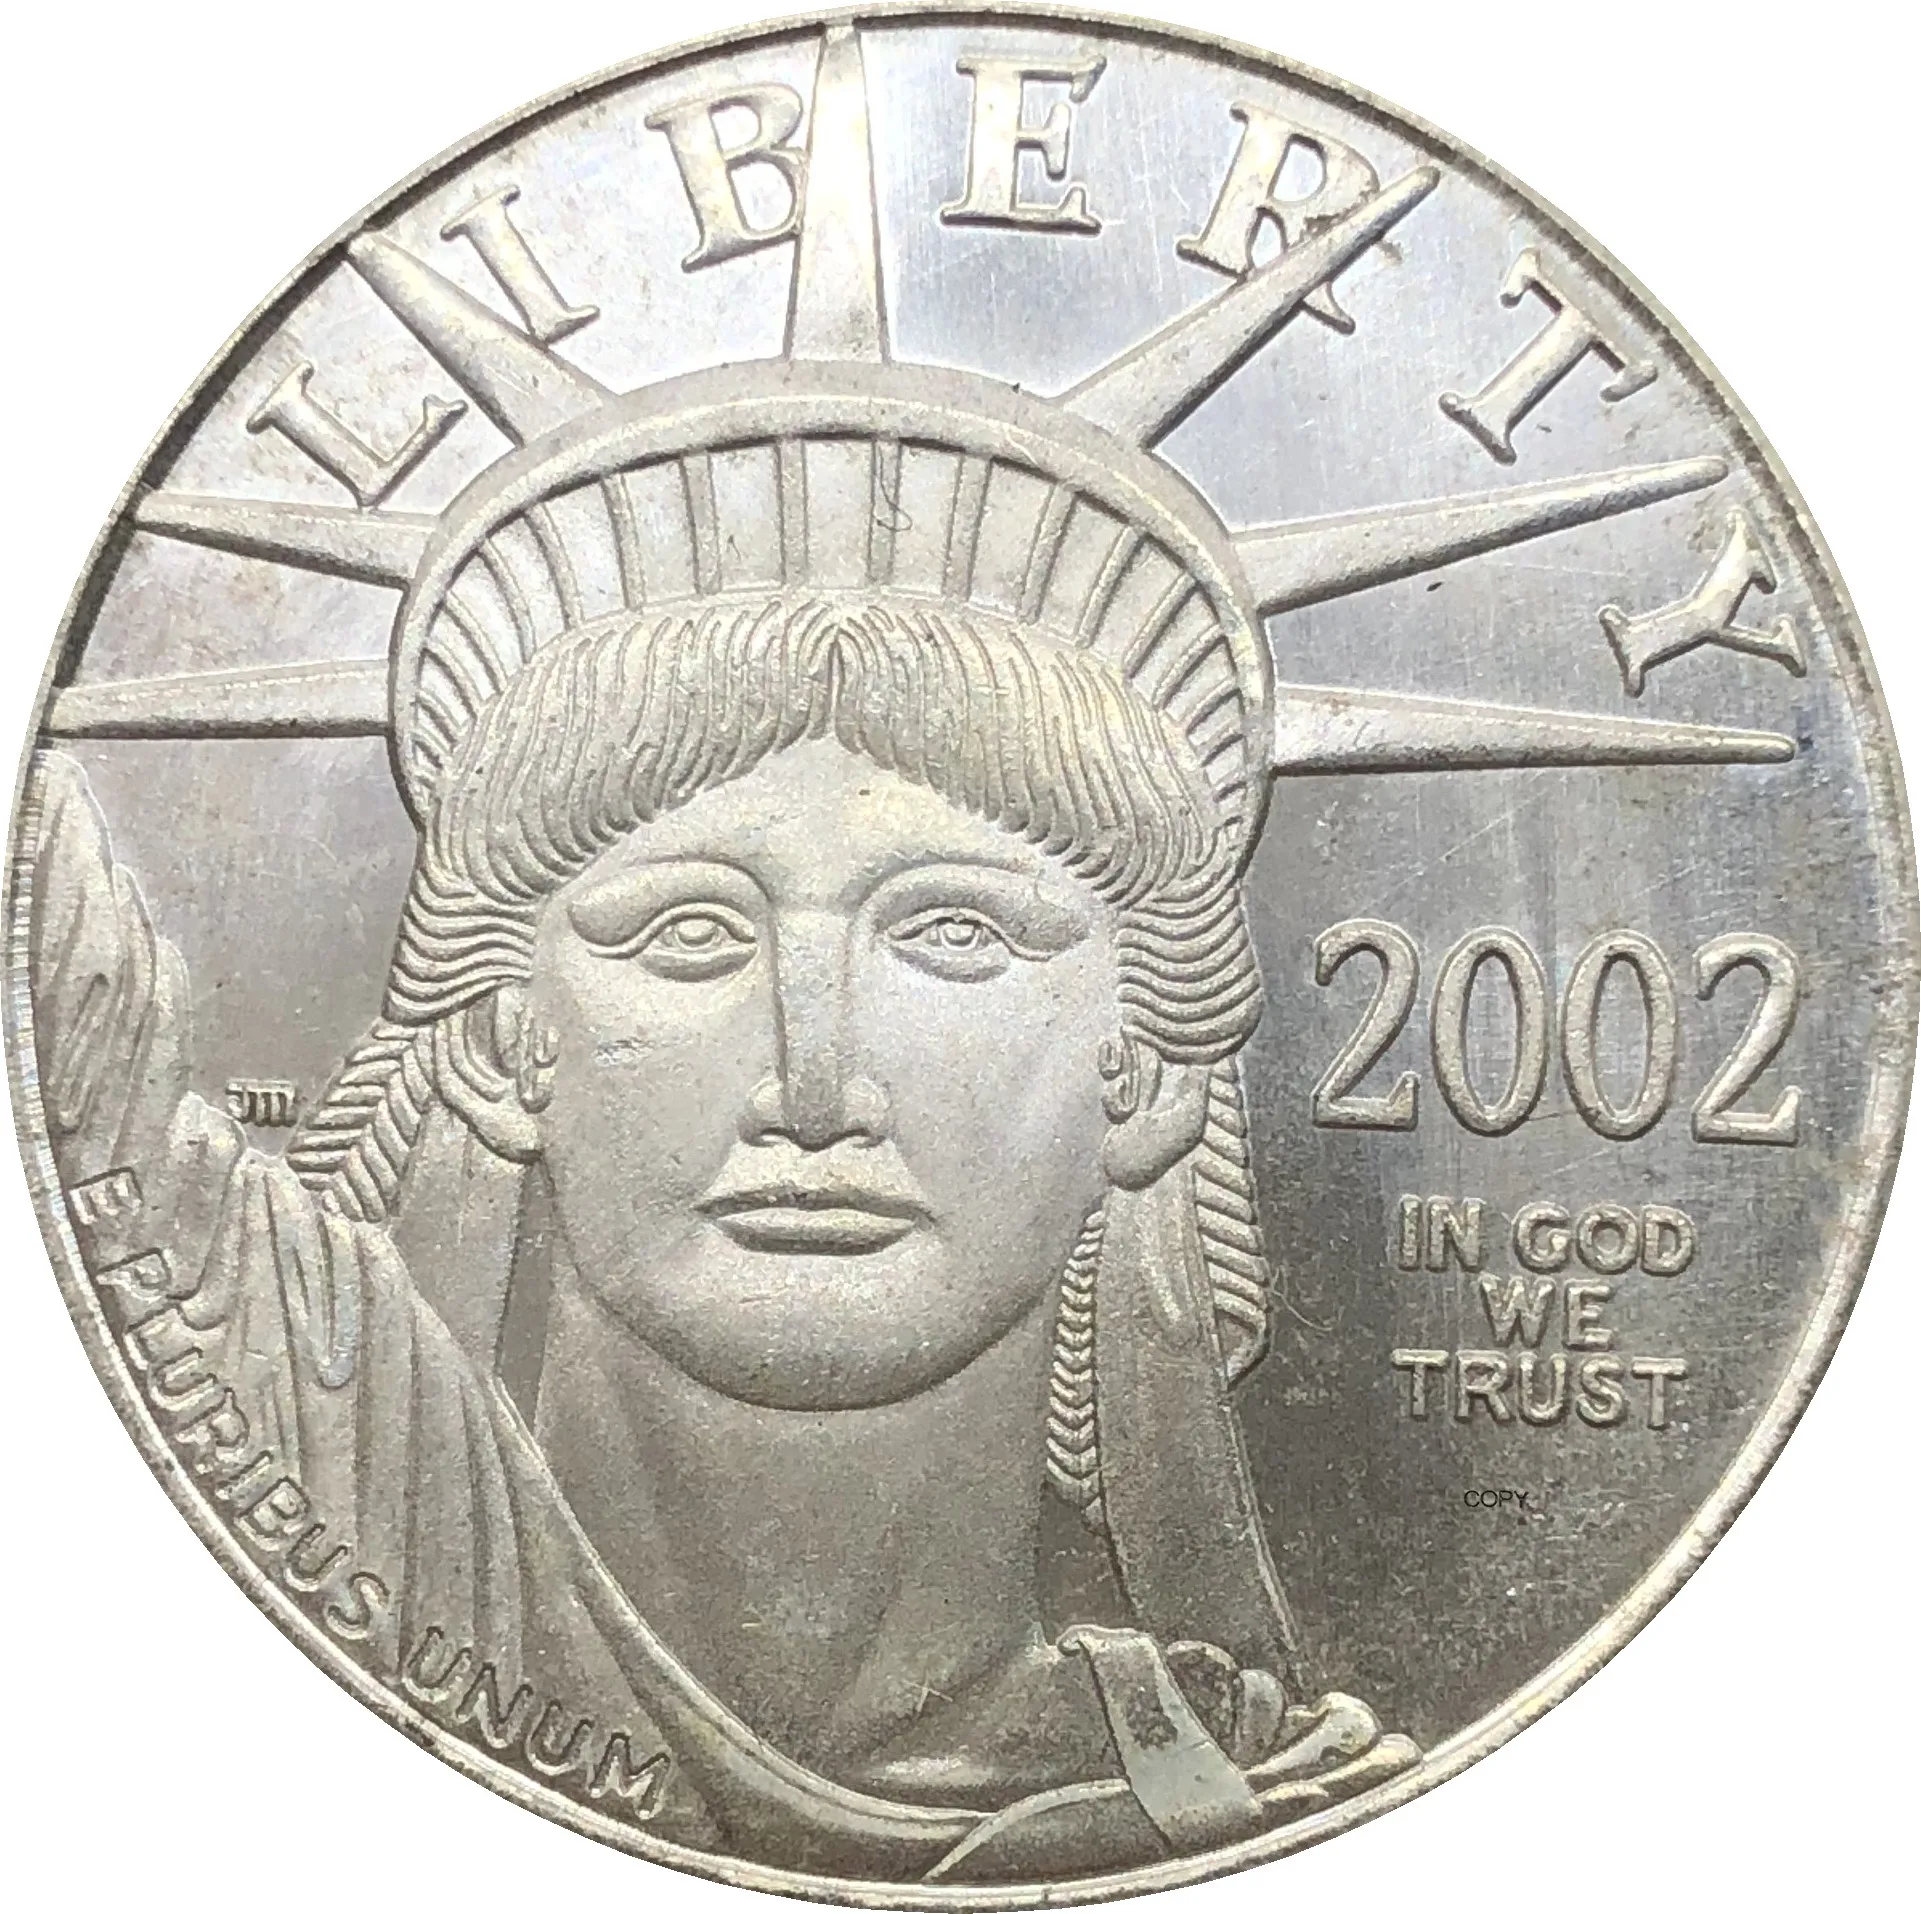 

Соединенные Штаты, Америка, 2002 Вт, в Бог, мы доверяем свободе, монета США, искусственная, одна унция, 1 унция, слитка, Посеребренная копия, памя...